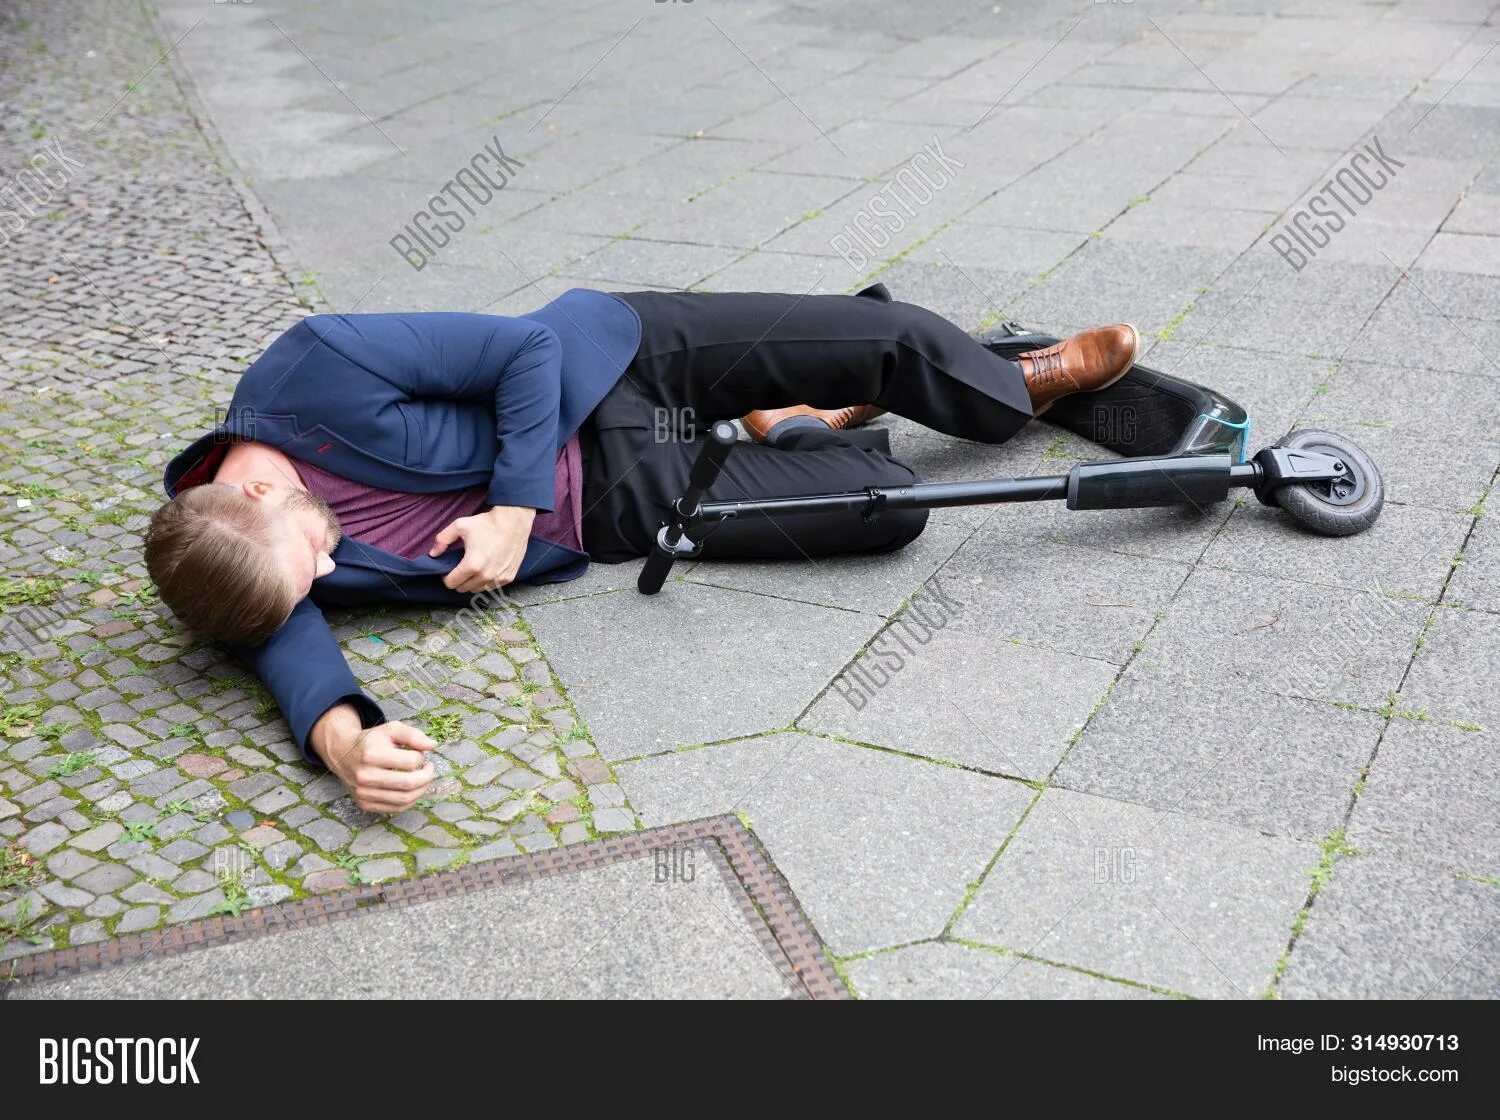 Человек лежит без сознания. Парень лежит без сознания. Несчастный случай на улице. Фото несчастного человека. Мужчина лежит без сознания